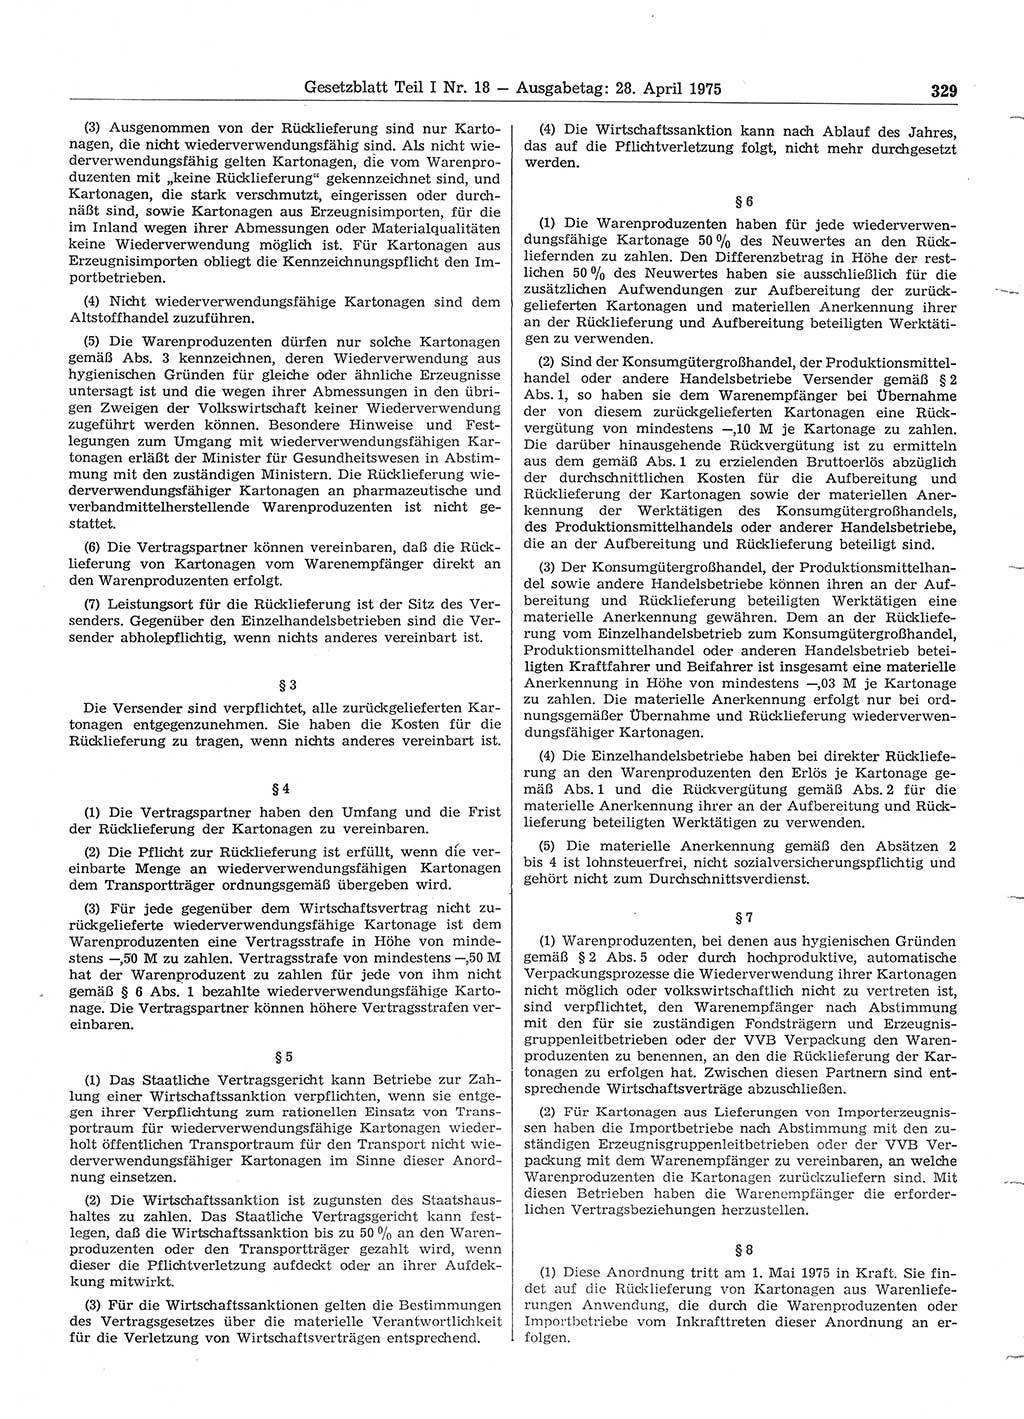 Gesetzblatt (GBl.) der Deutschen Demokratischen Republik (DDR) Teil Ⅰ 1975, Seite 329 (GBl. DDR Ⅰ 1975, S. 329)